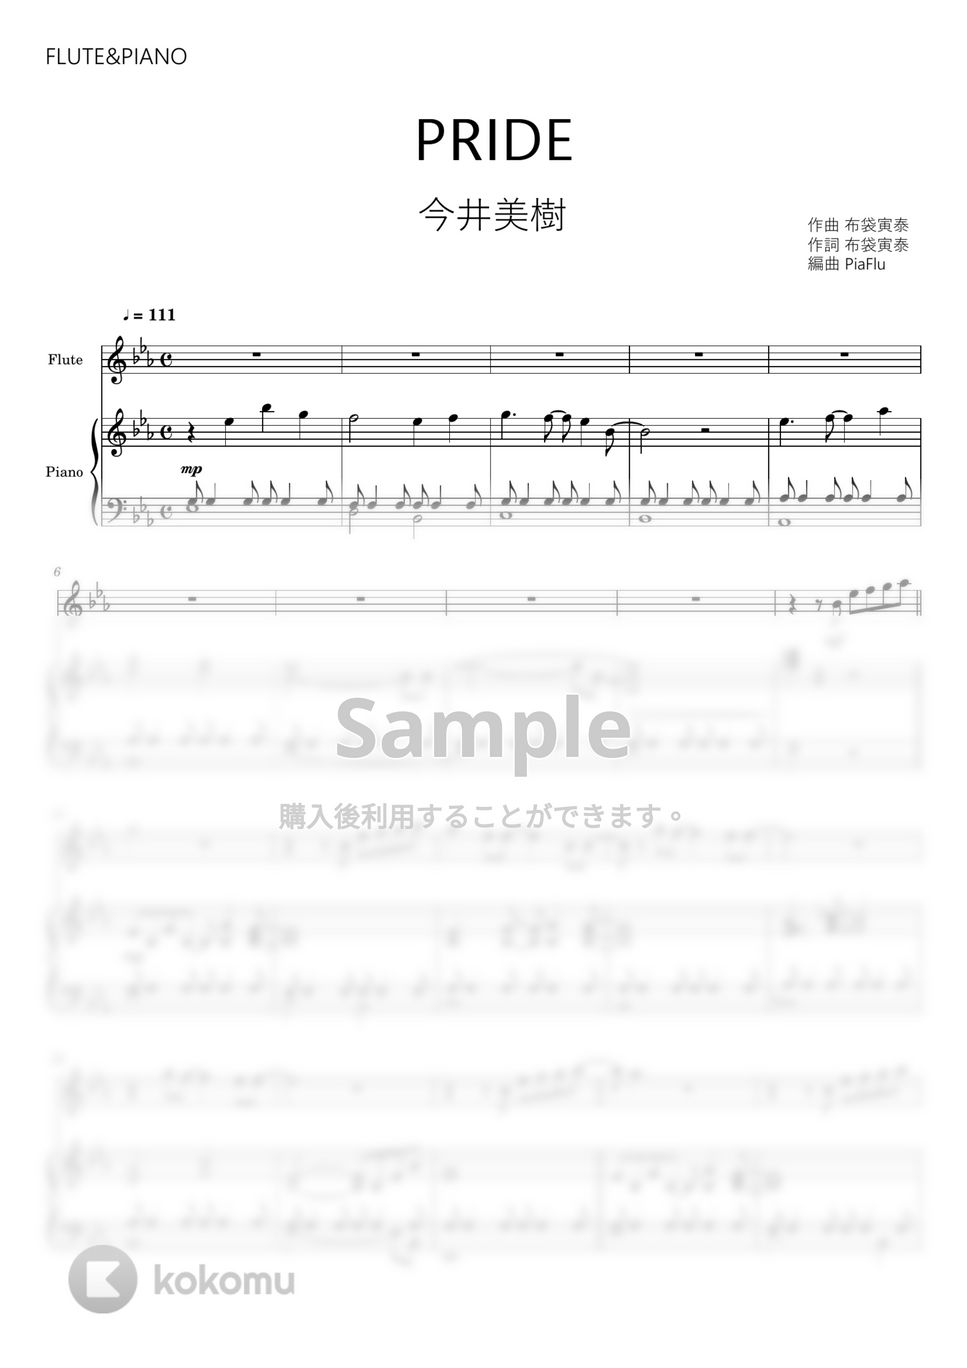 今井美樹 - PRIDE (フルート&ピアノ伴奏) by PiaFlu